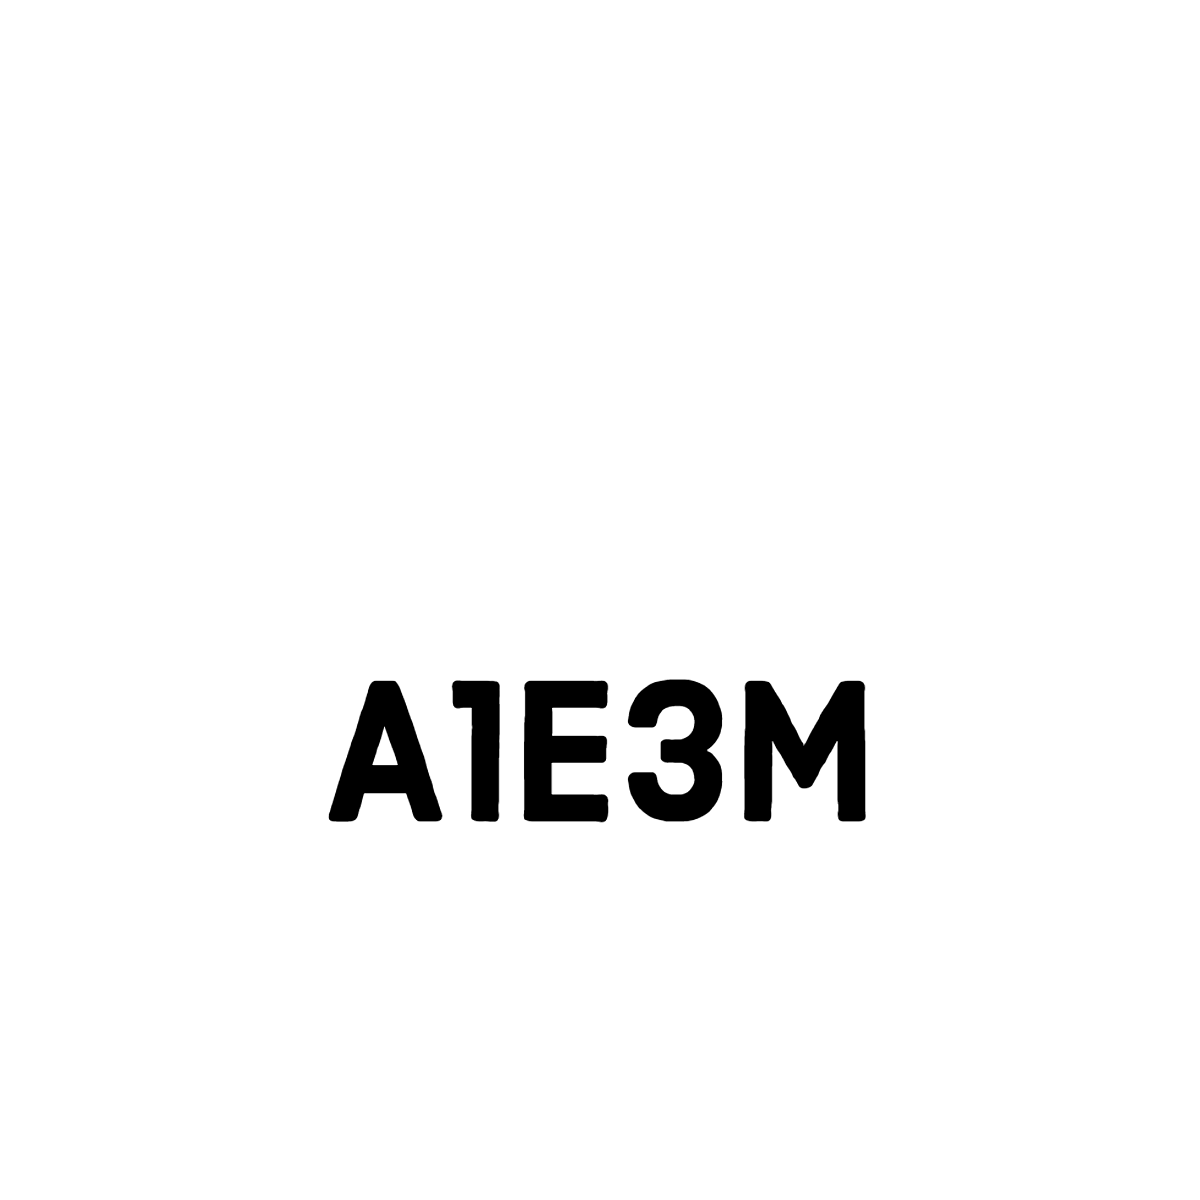 a1e3m logo